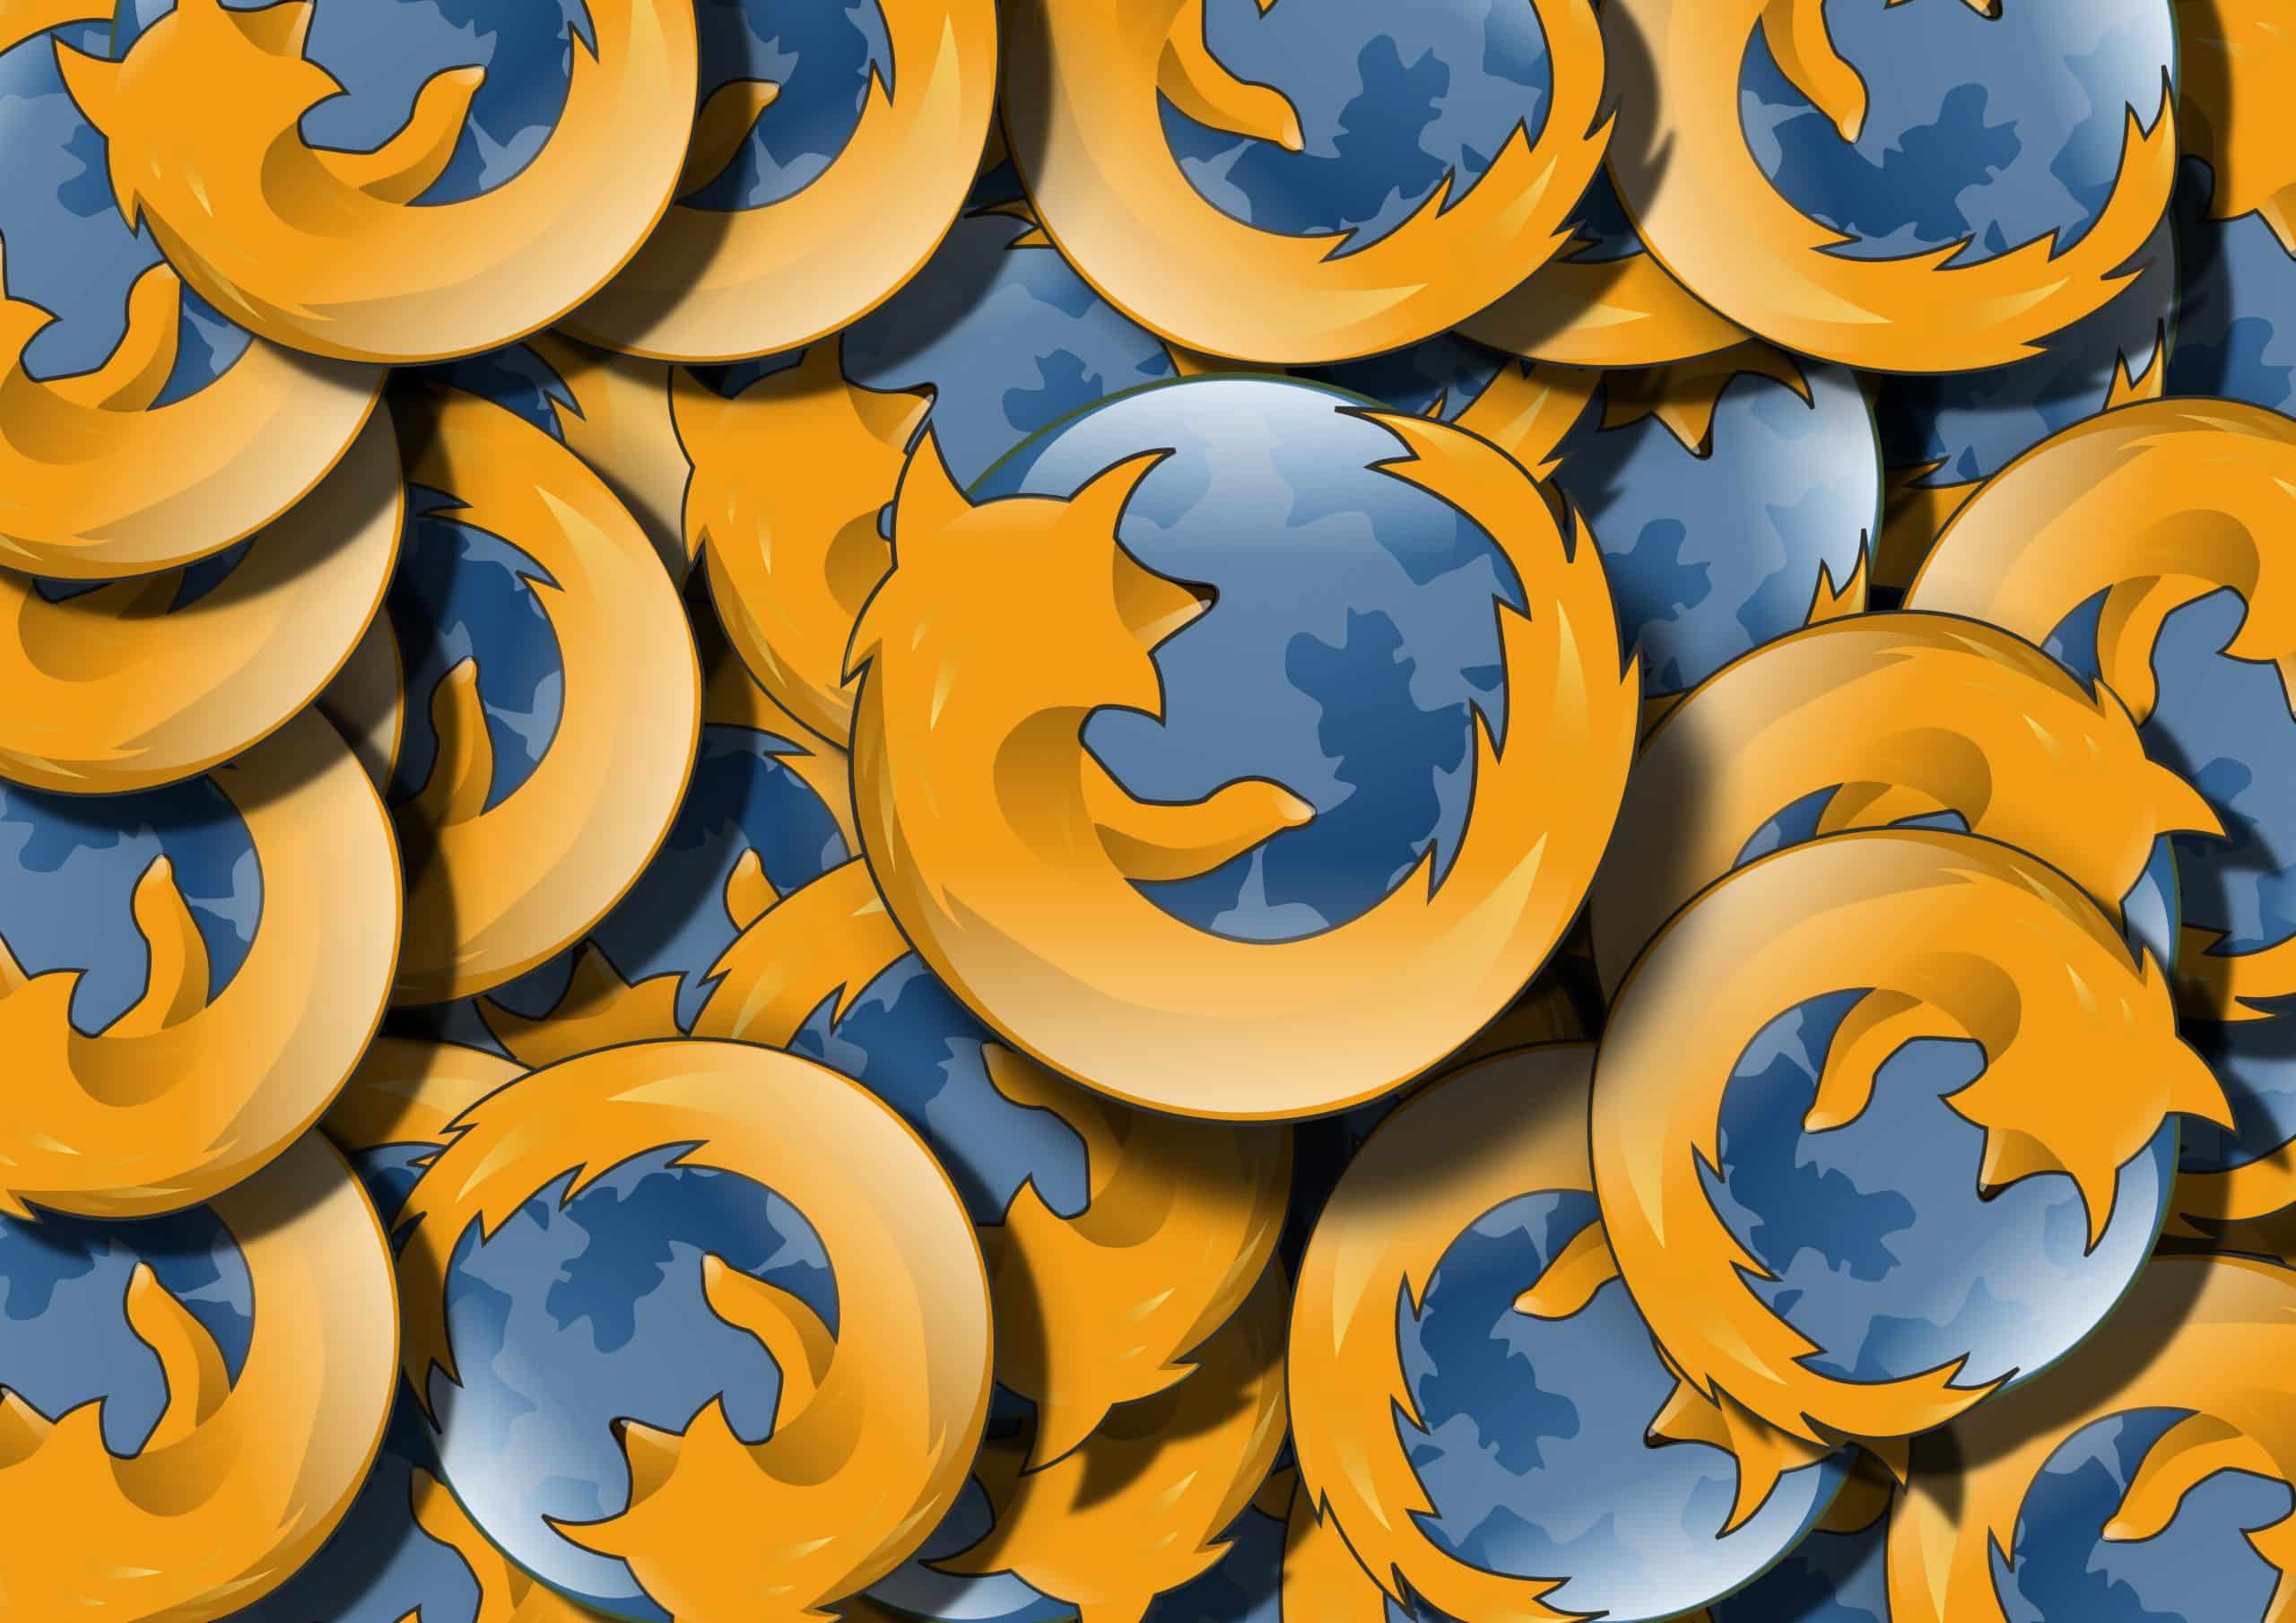 Une extension sur Firefox récoltait les données des utilisateurs.